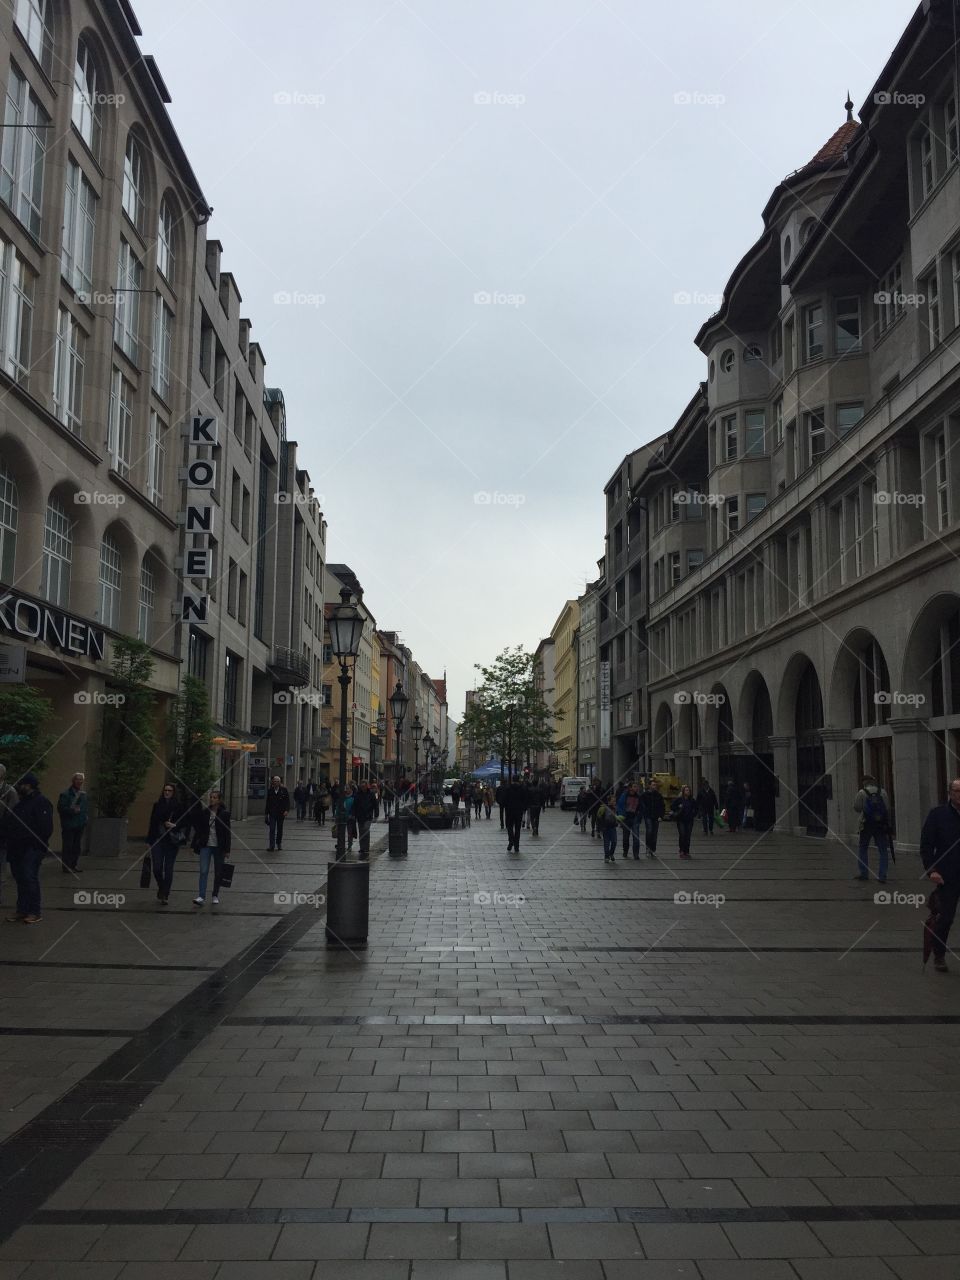 Munich - May 2016